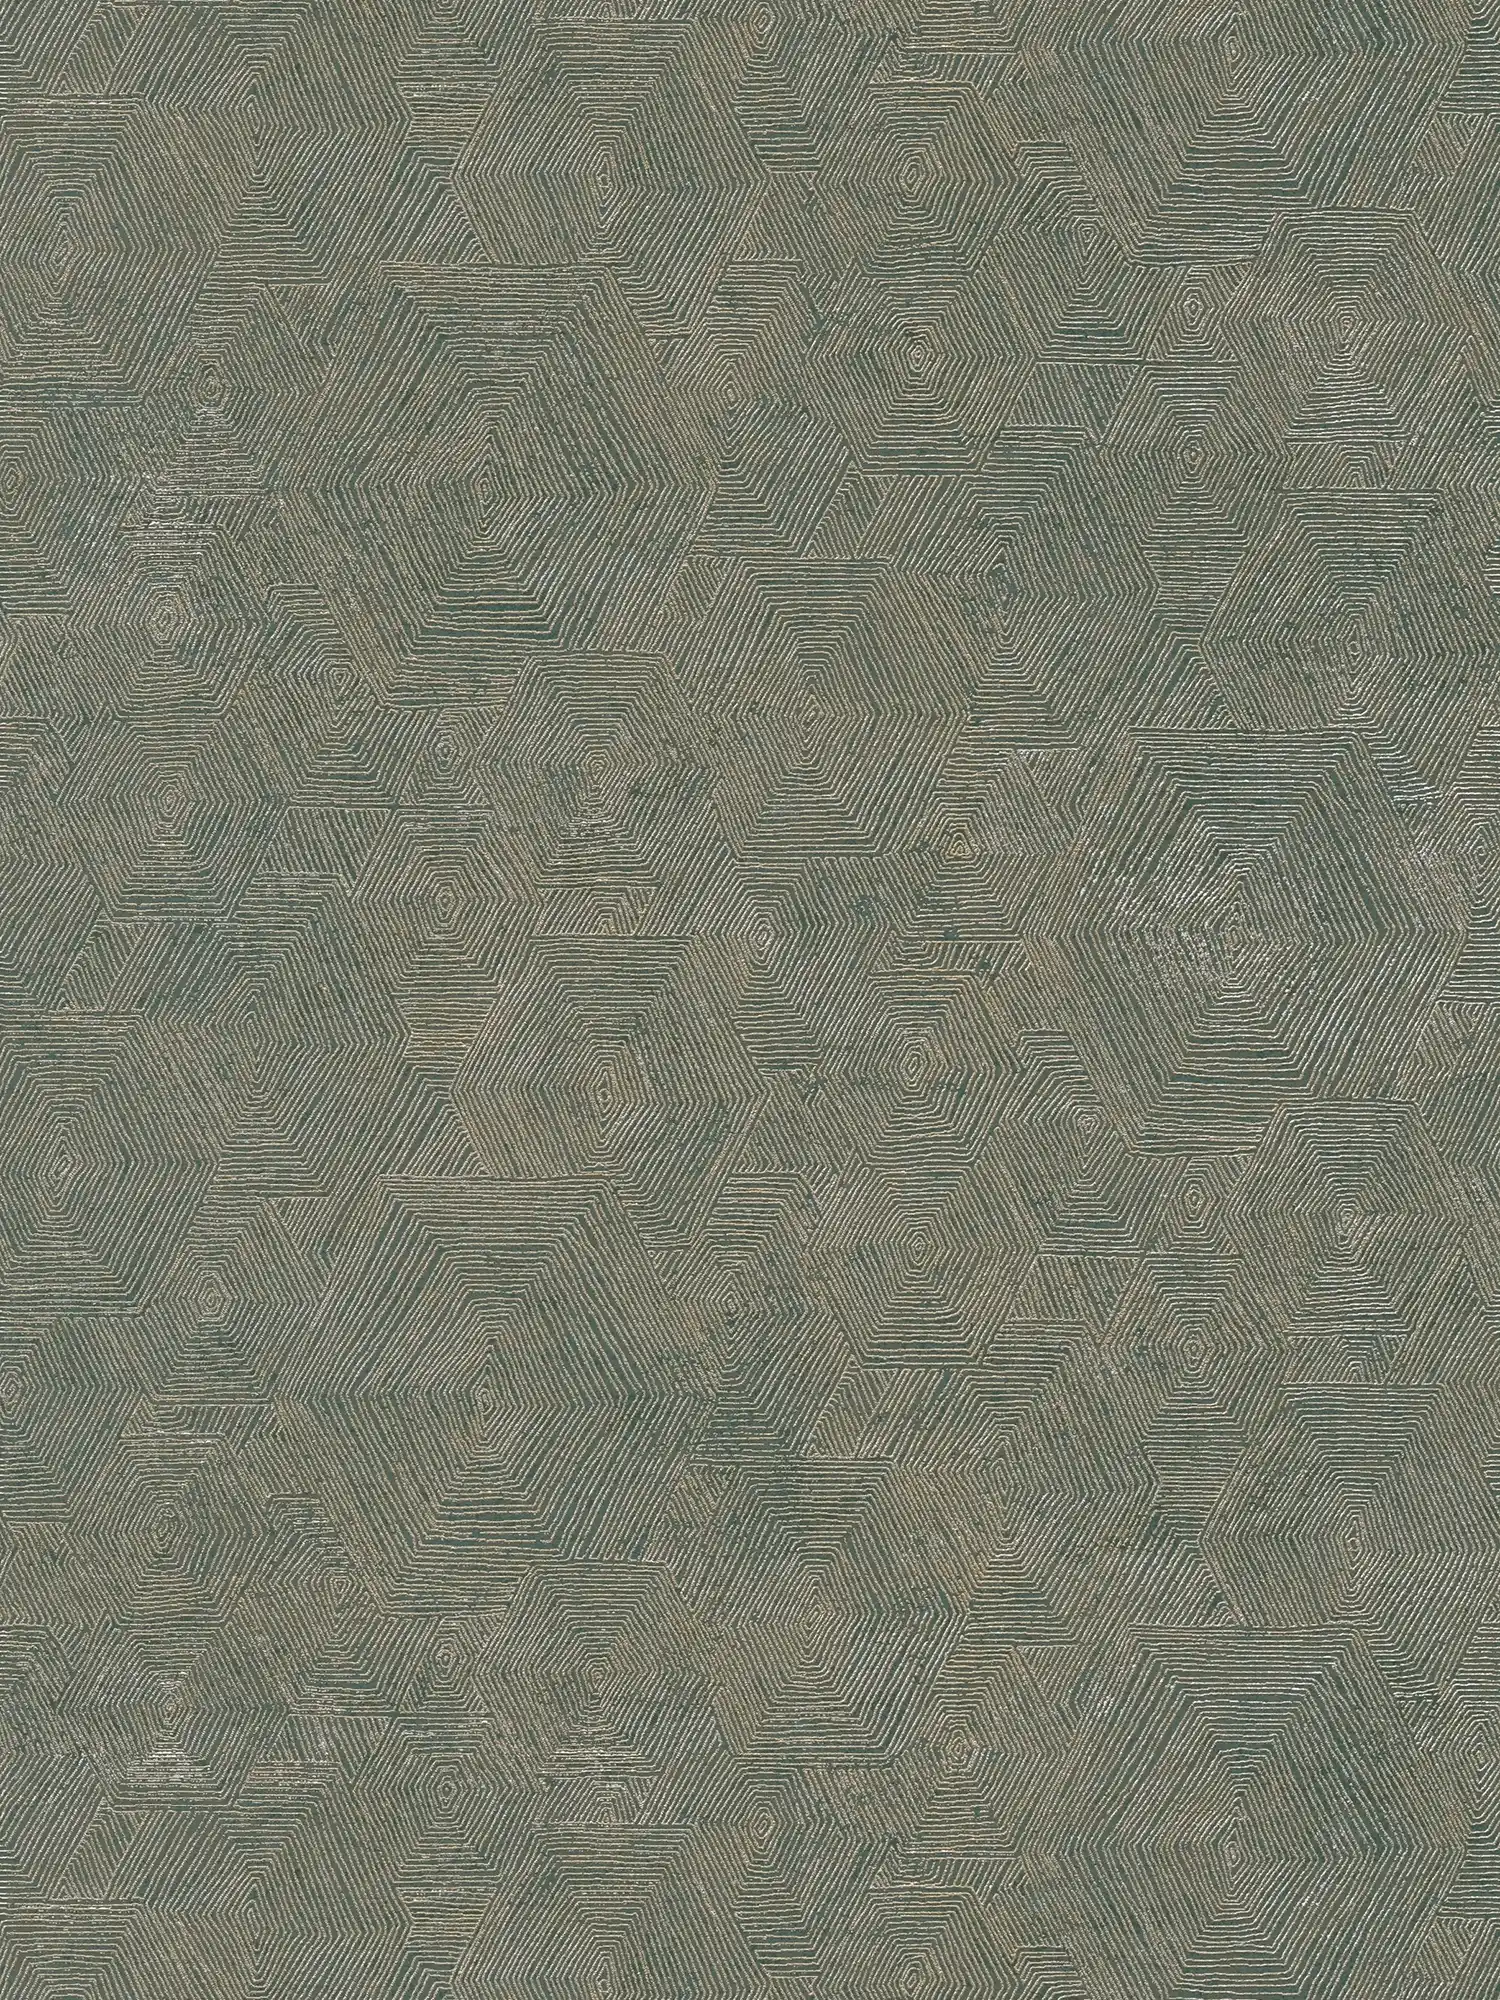 papier peint chiné avec structure graphique dans un look ethnique - métallique, vert
